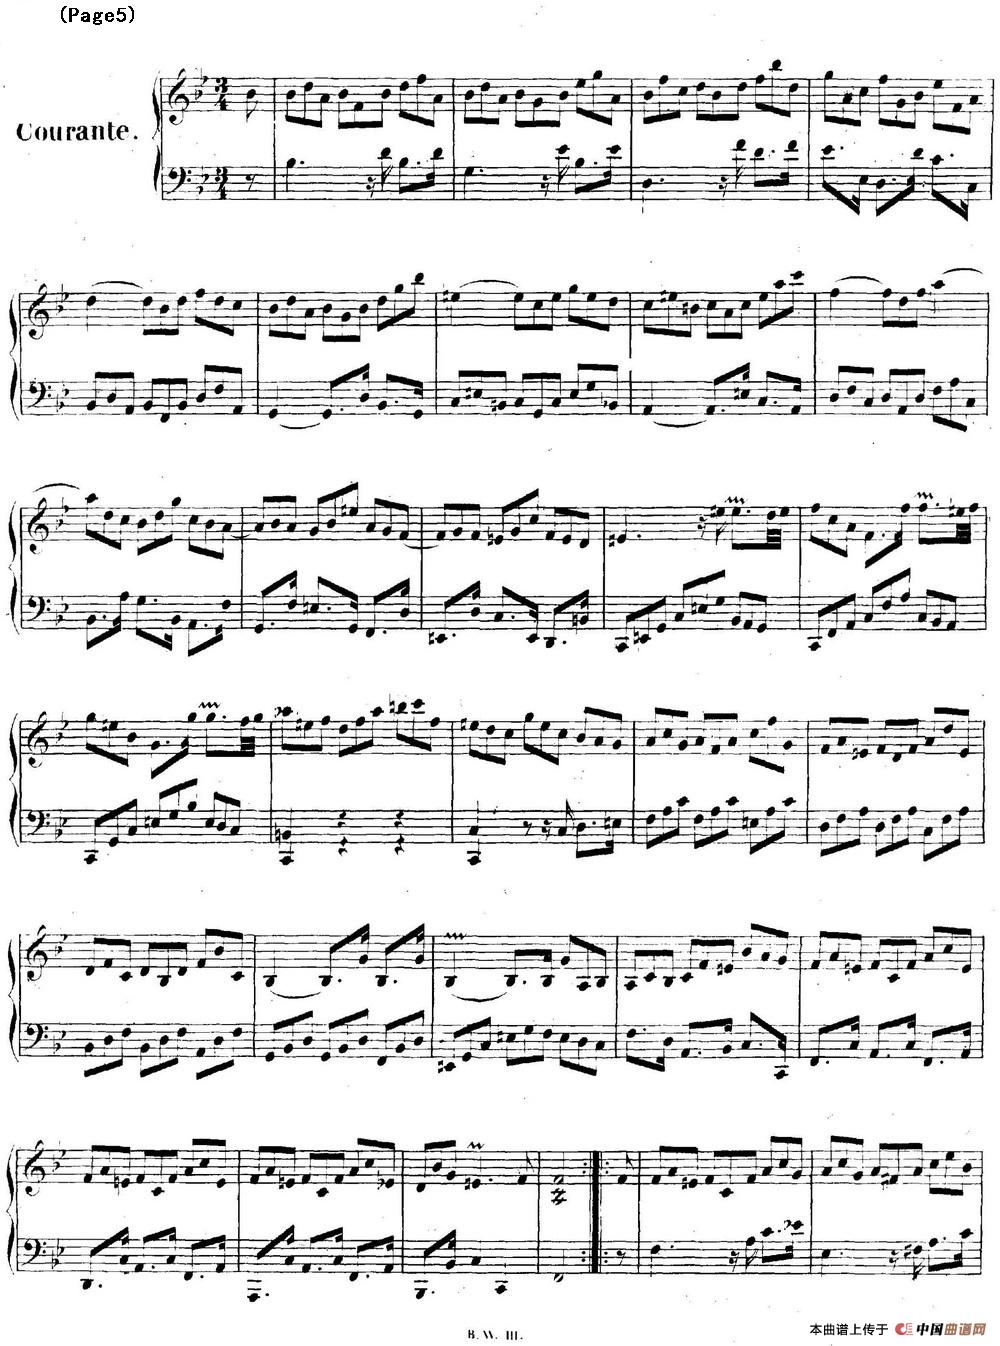 帕蒂塔6首德国组曲（No.1 降B大调 巴赫 Partita B-flat Major BWV825）(1)_BWV0825_页面_05.jpg